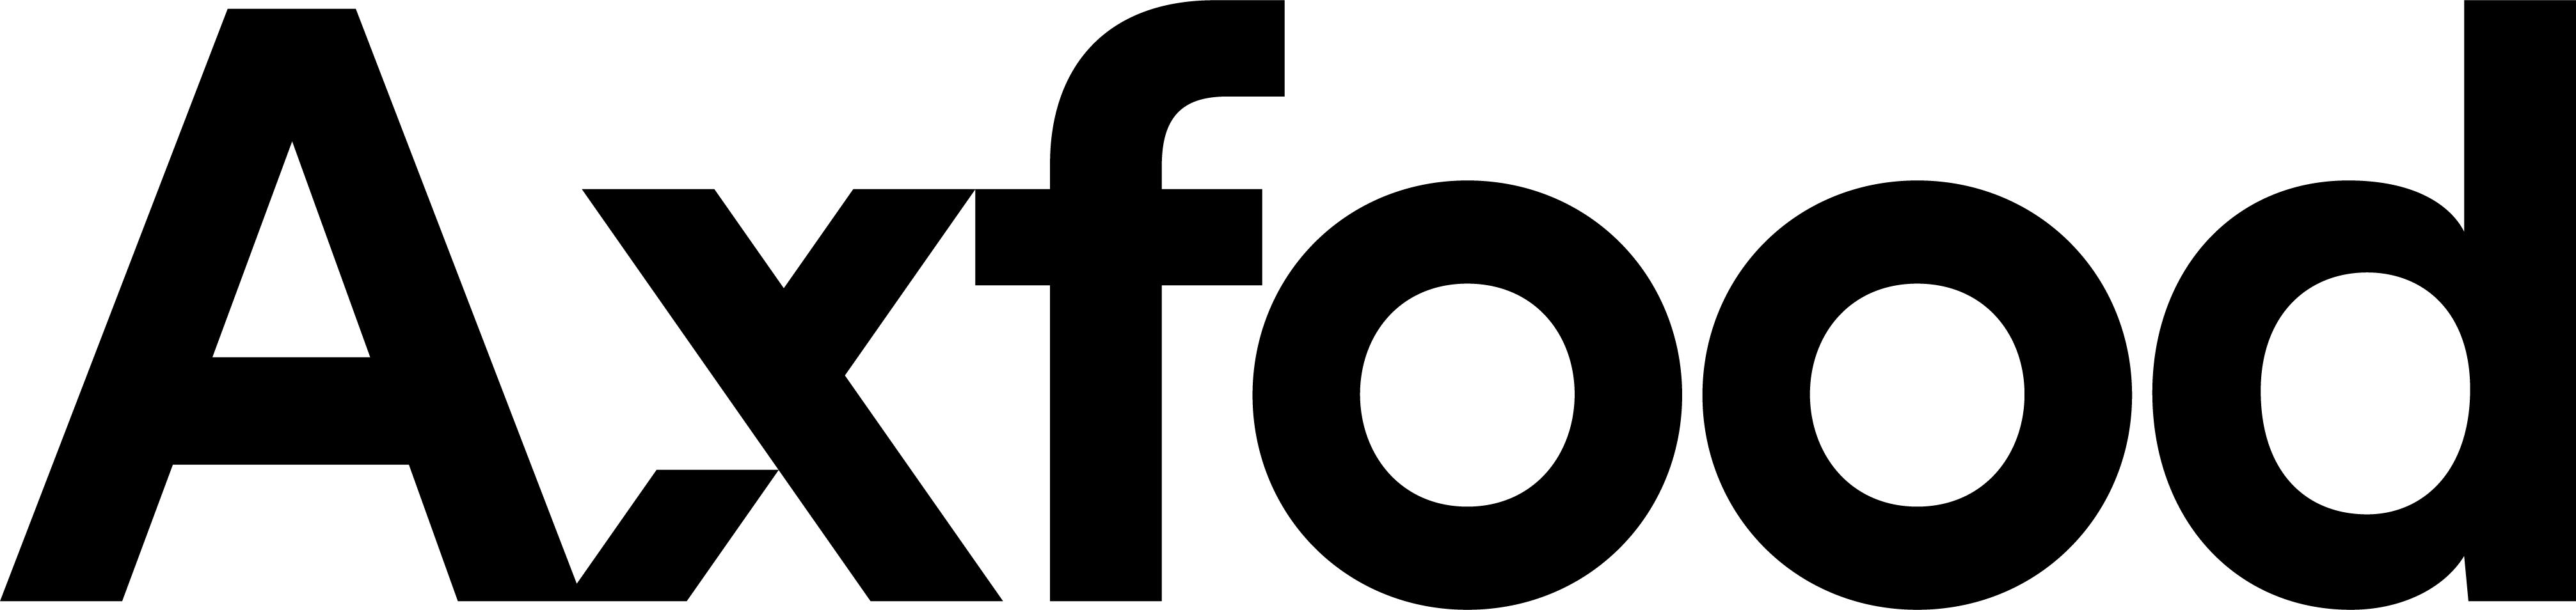 Sjöräddningssällskapet logotype